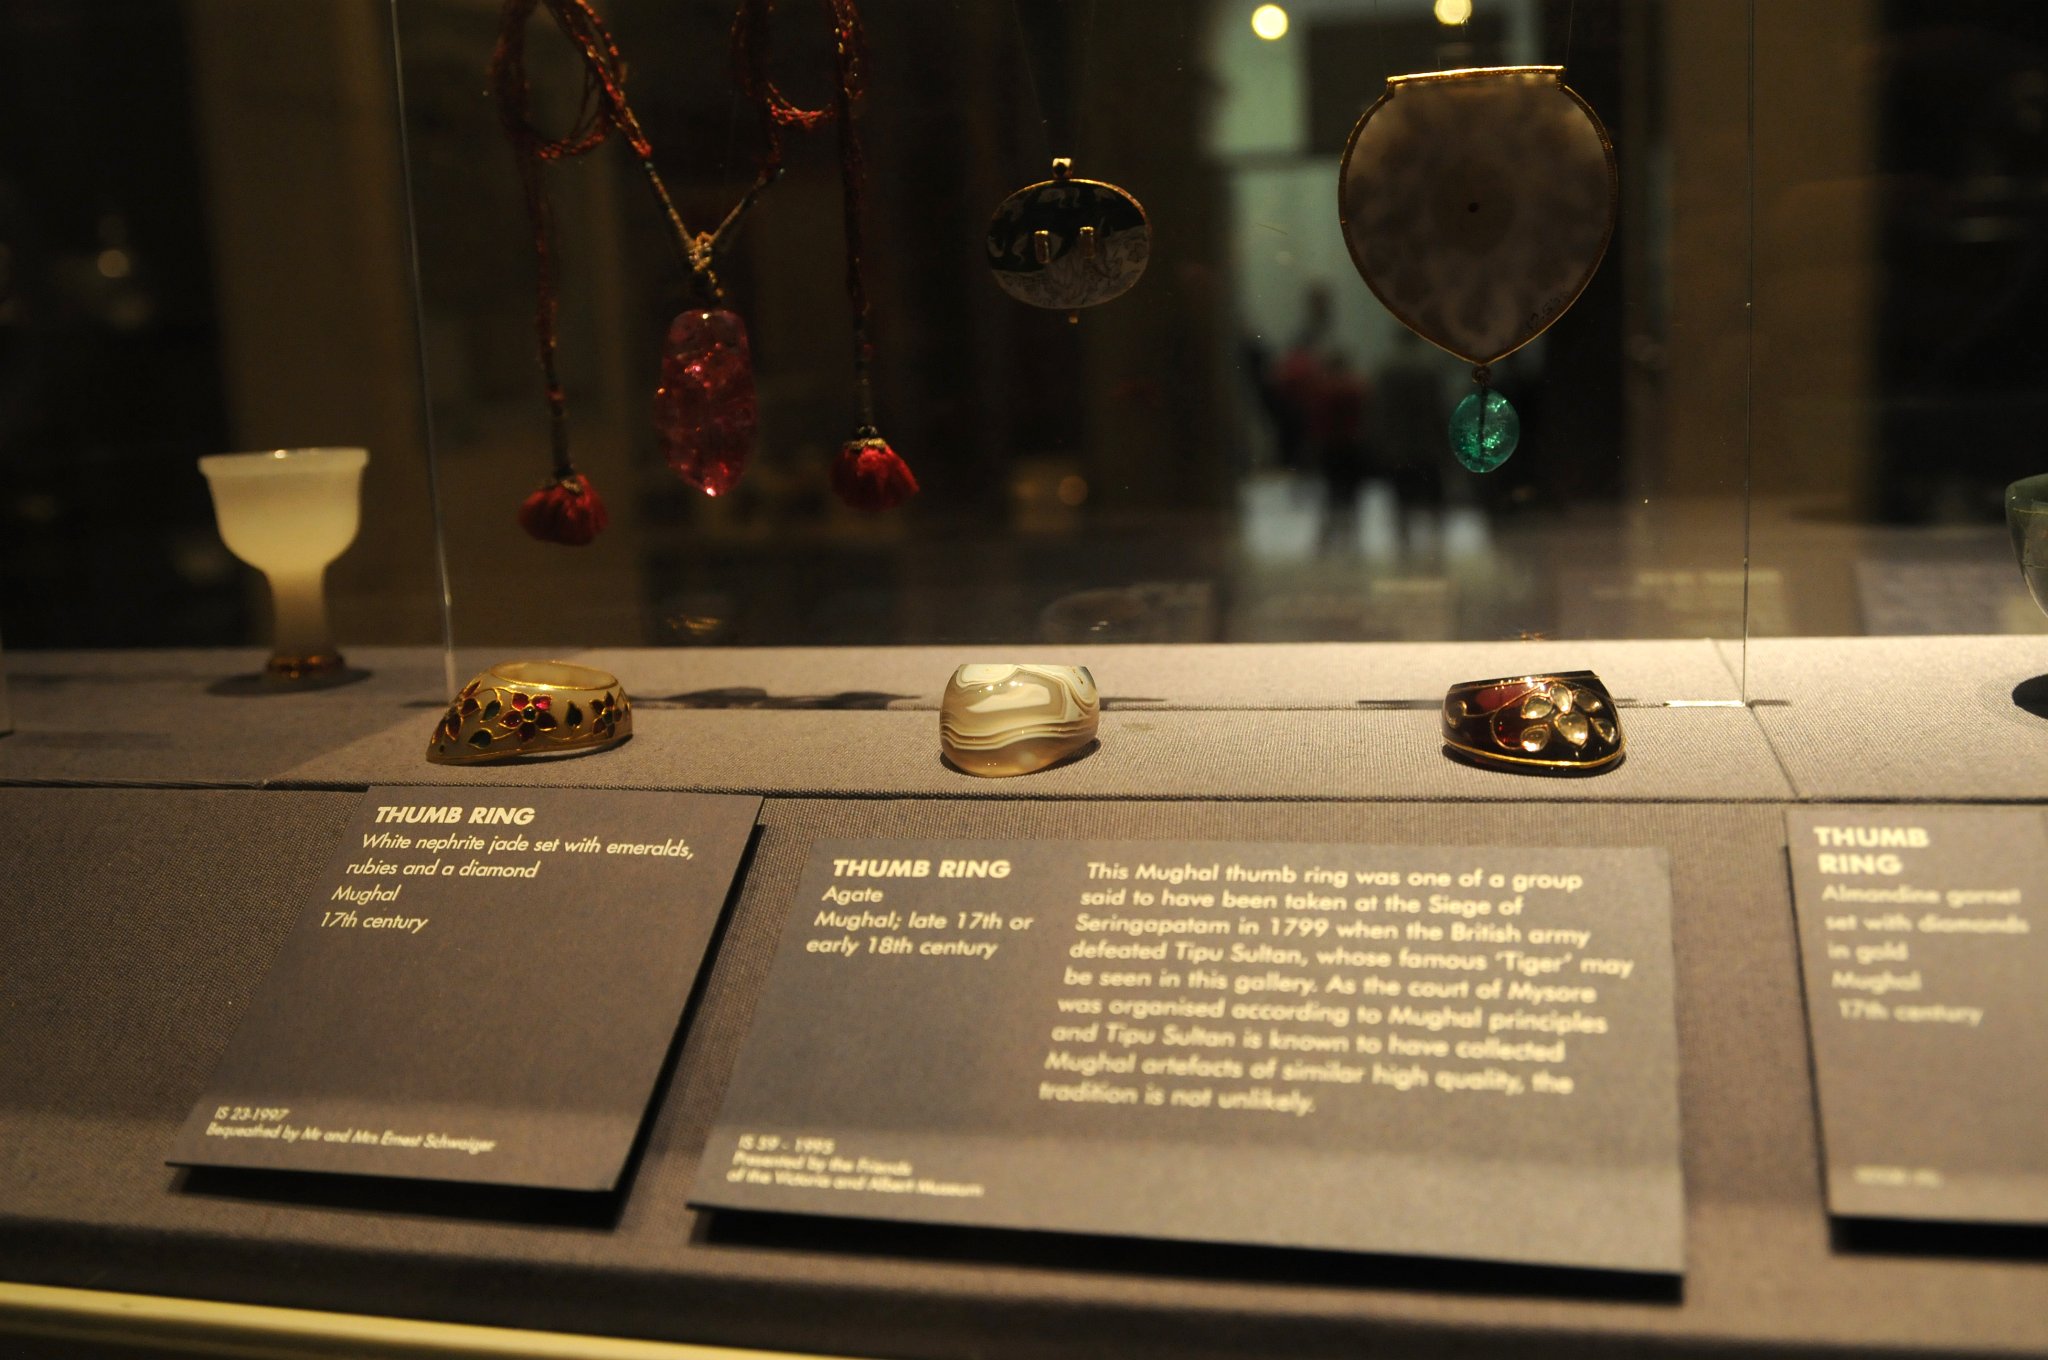 DSC_7979_1.jpg - Zleva: Prsten na palec z bílého nefritu pocházející ze 17 století z oblasti Mughal, zdobený smaragdy, rubíny a diamanty. Achátový prsten na palec. Mughal, konec 17. století, počátek 18. století. Tento prsten byl získán spolu s dalšími artefakty v době, kdy Britská armáda obléhala Seringopatam v roce 1799 a porazila sultána Tipu. Prsten na palec, Mughal, 17. století. diamanty ve zlatě.